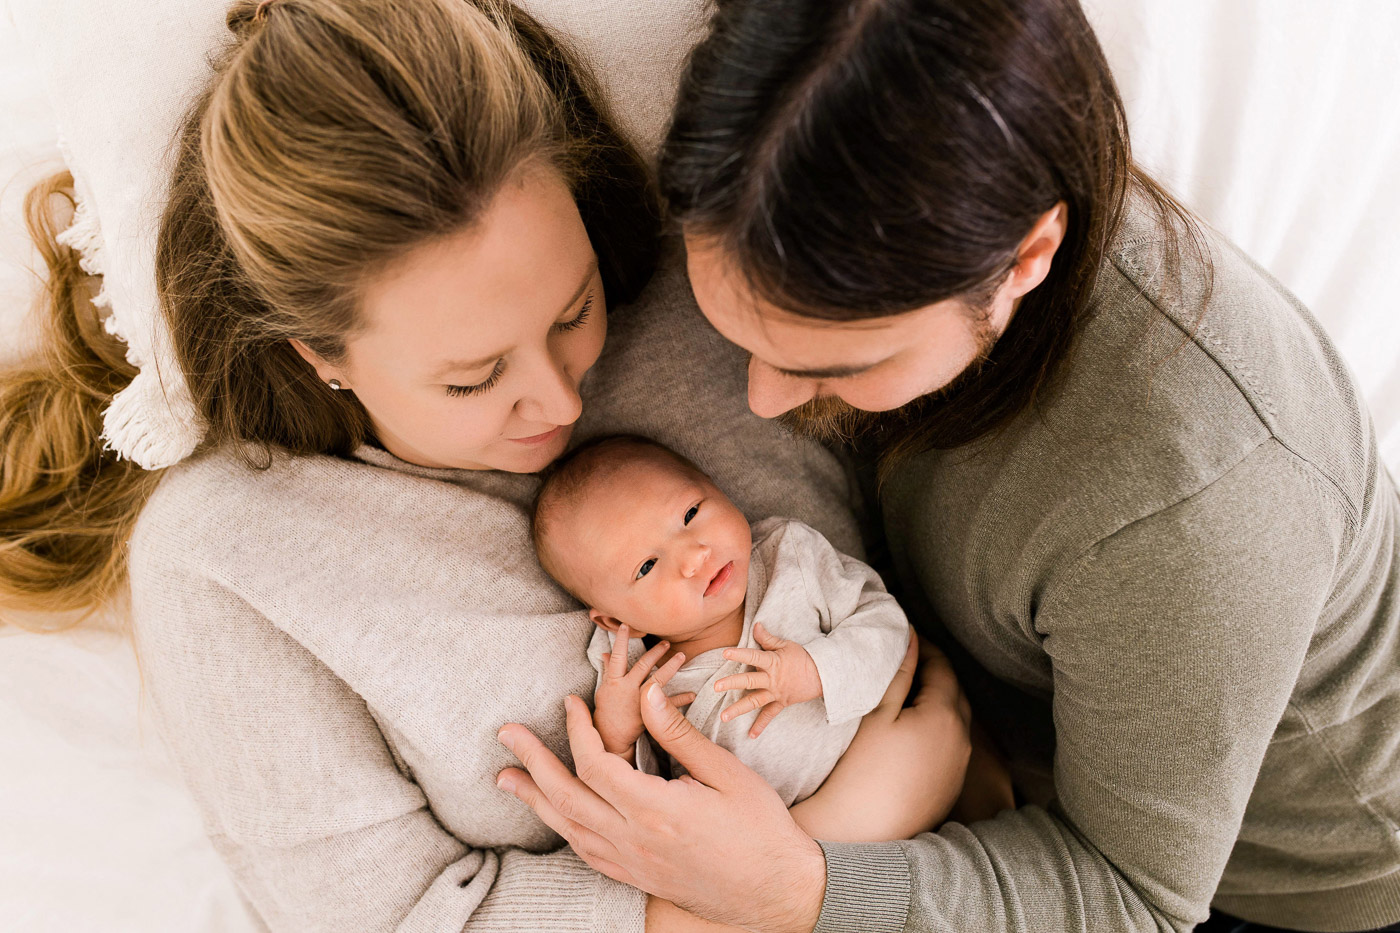 Fotoshooting mit neugeborenem Baby kurz nach der Geburt mit Familie im Studio mit Familienfotografin Julia Pitz, Babyfotograf in Rodgau, Frankfurt, Hanau und Aschaffenburg